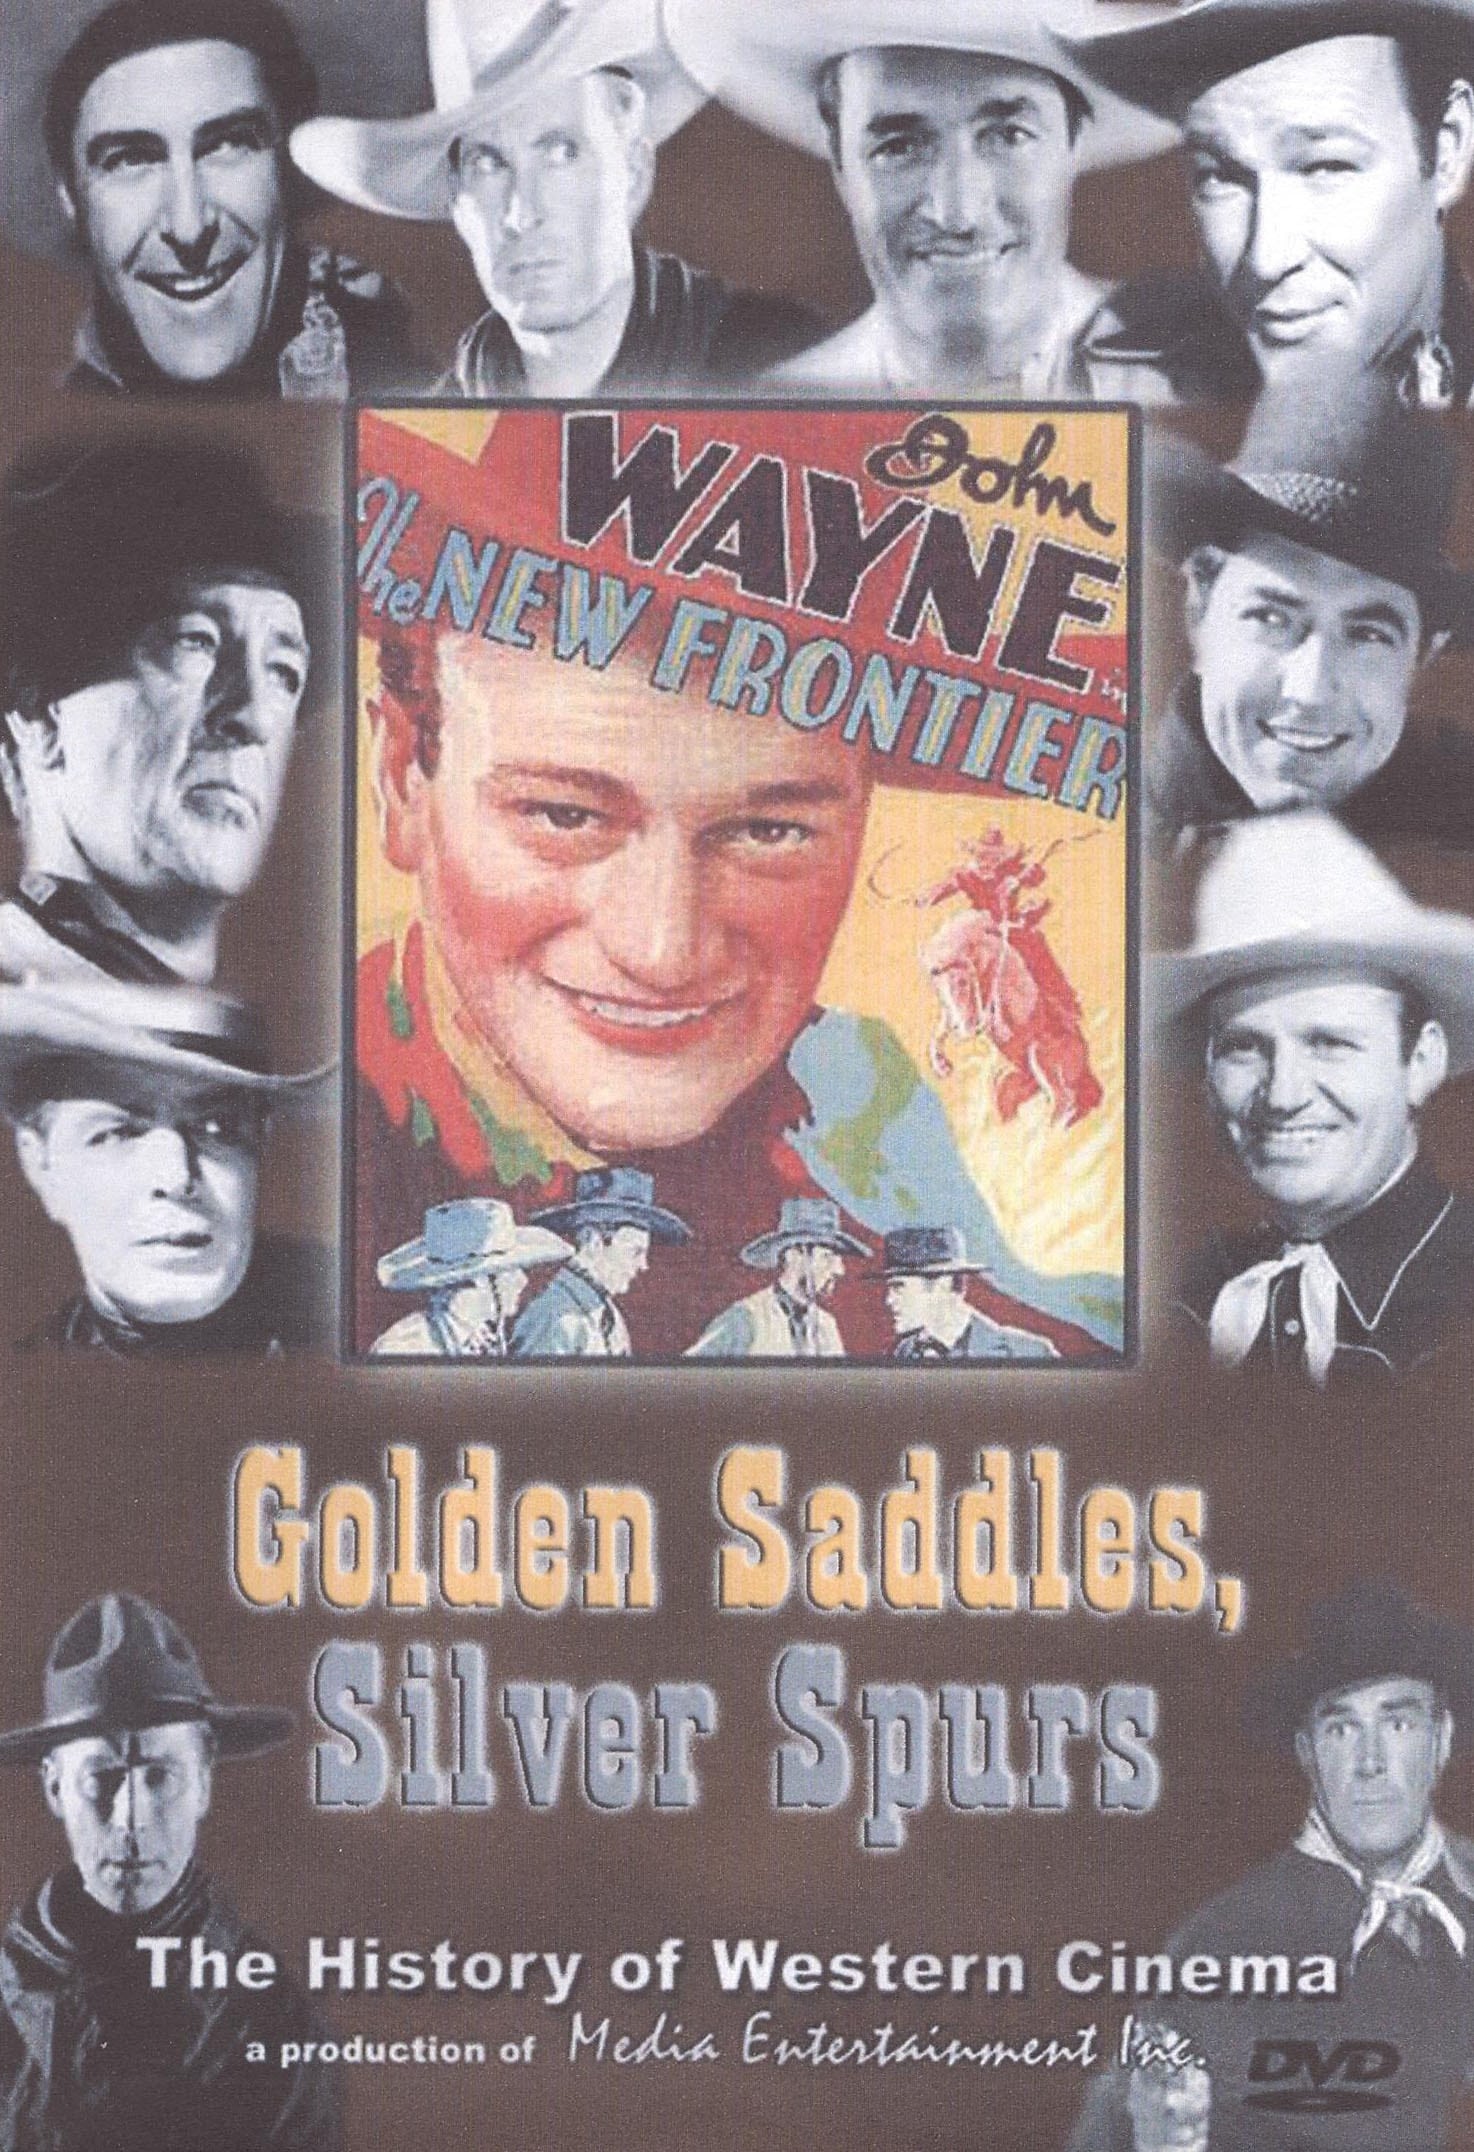 Golden Saddles, Silver Spurs (2000)